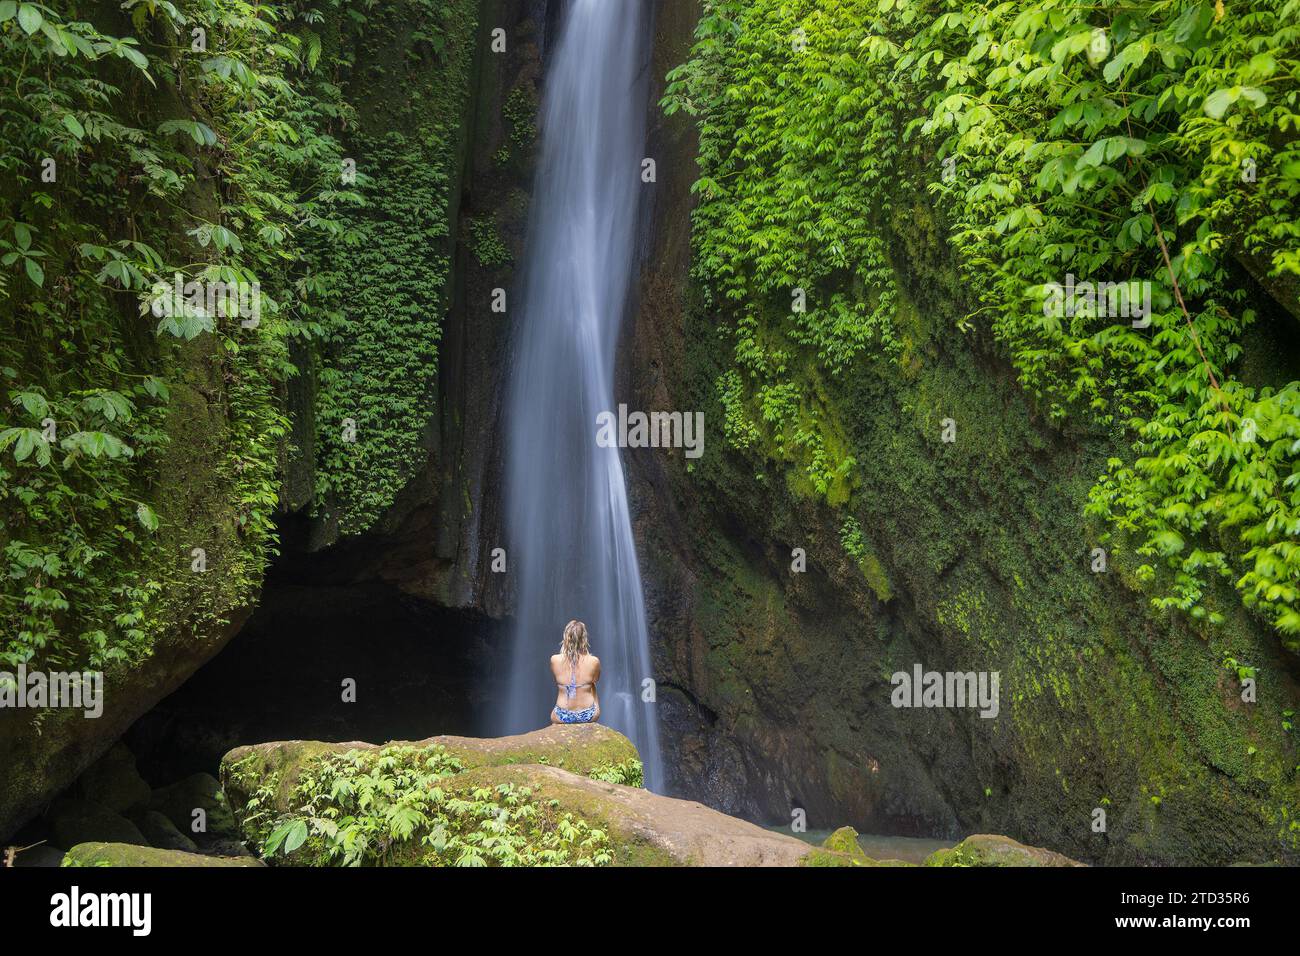 Eine junge Frau im Badeanzug am Wasserfall Leke Leke im üppigen tropischen Wald, Bali, Indonesien Stockfoto